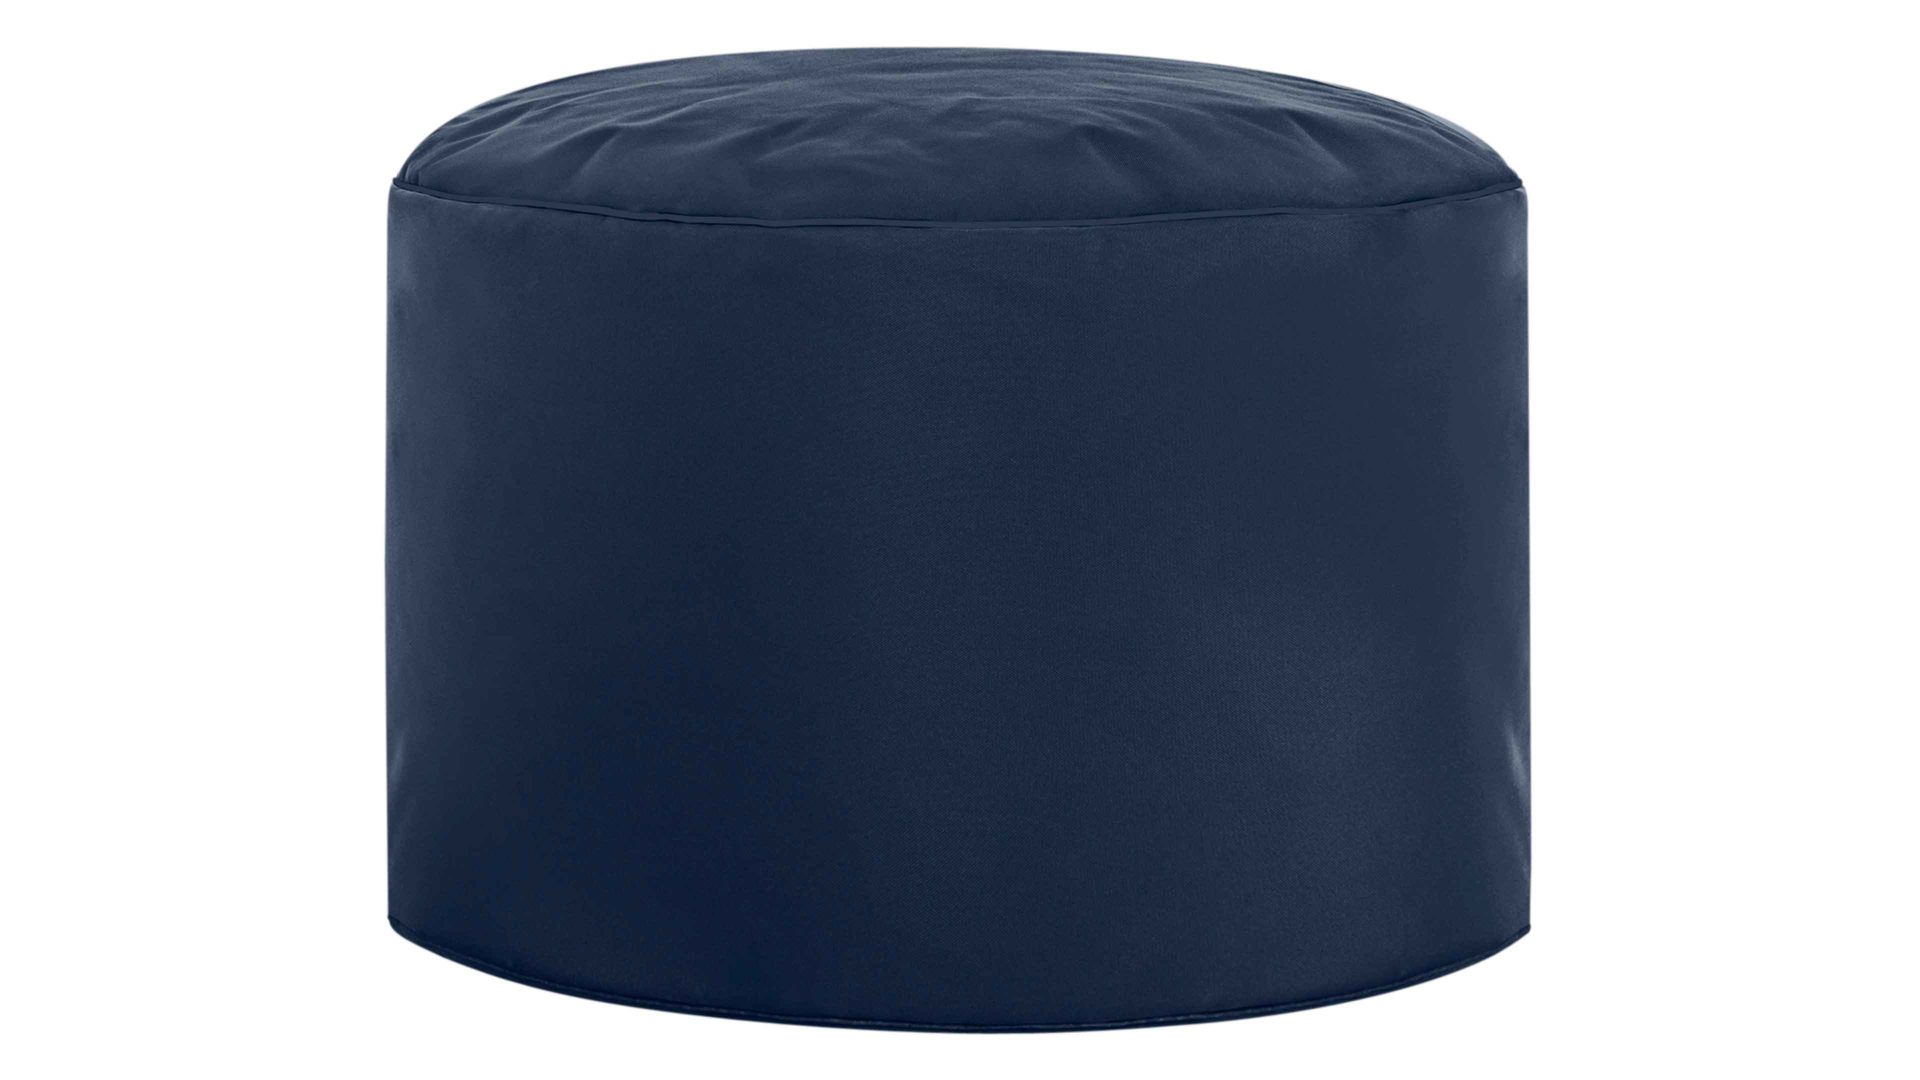 Sitzsack-Hocker Magma sitting point aus Kunstfaser in Jeansblau SITTING POINT Sitzsack-Hocker dotcom scuba® als Kleinmöbel jeansblaue Kunstfaser – Durchmesser ca. 50 cm